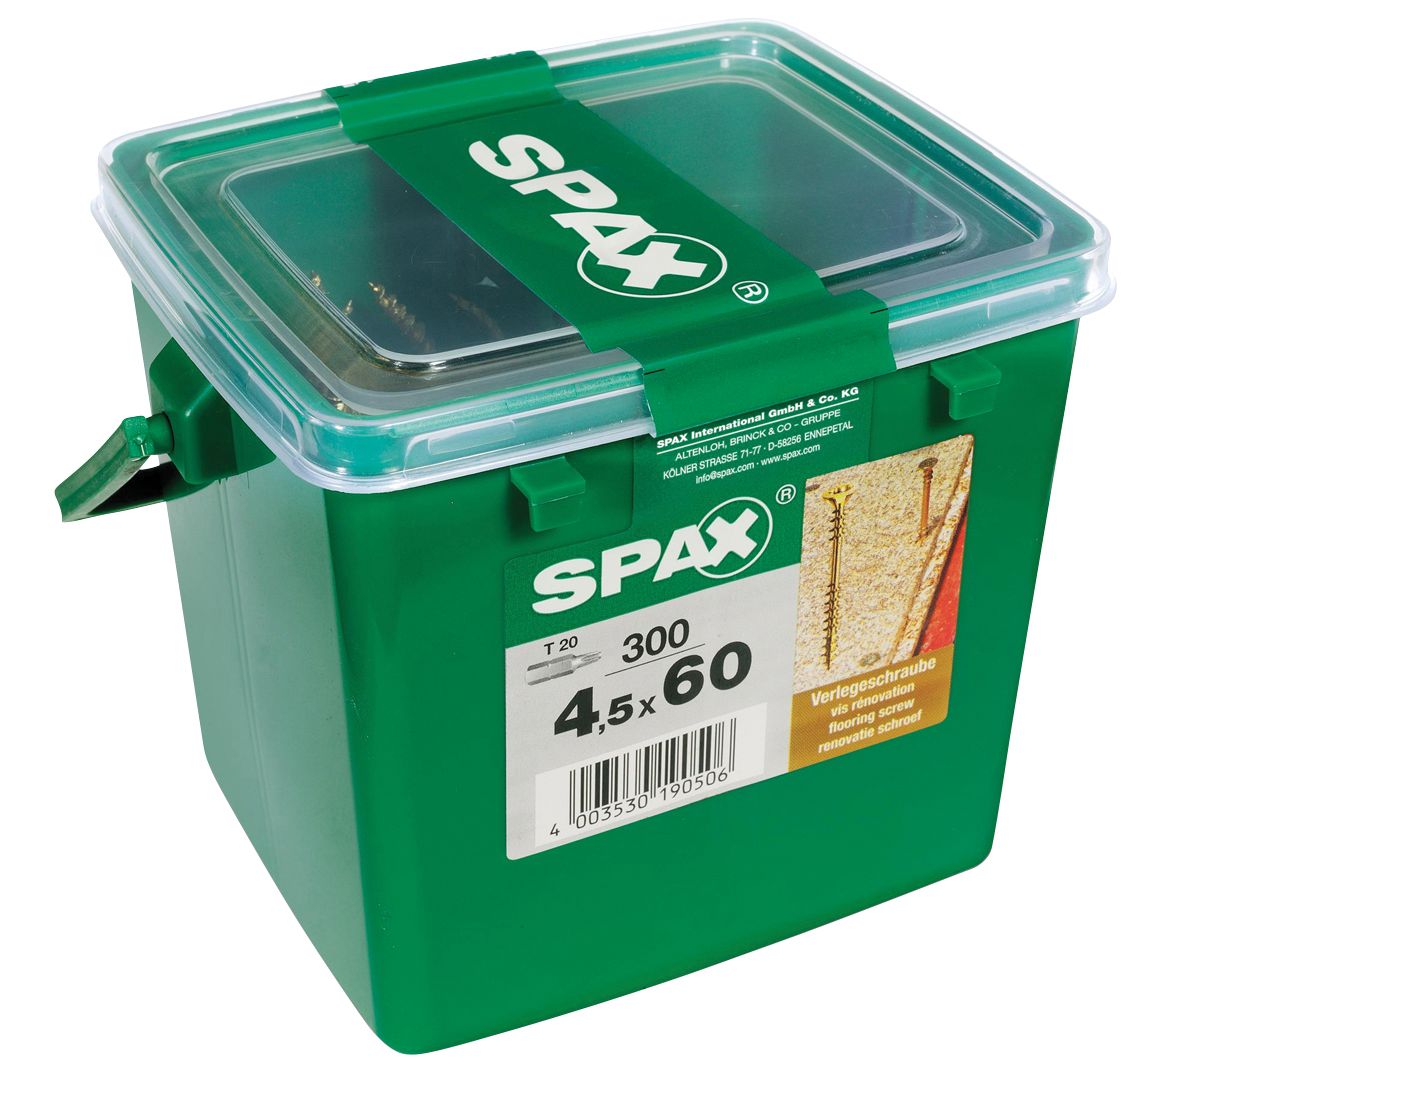 Spax Chipboard Flooring Screws - 4.5 x 60mm Pack of 300